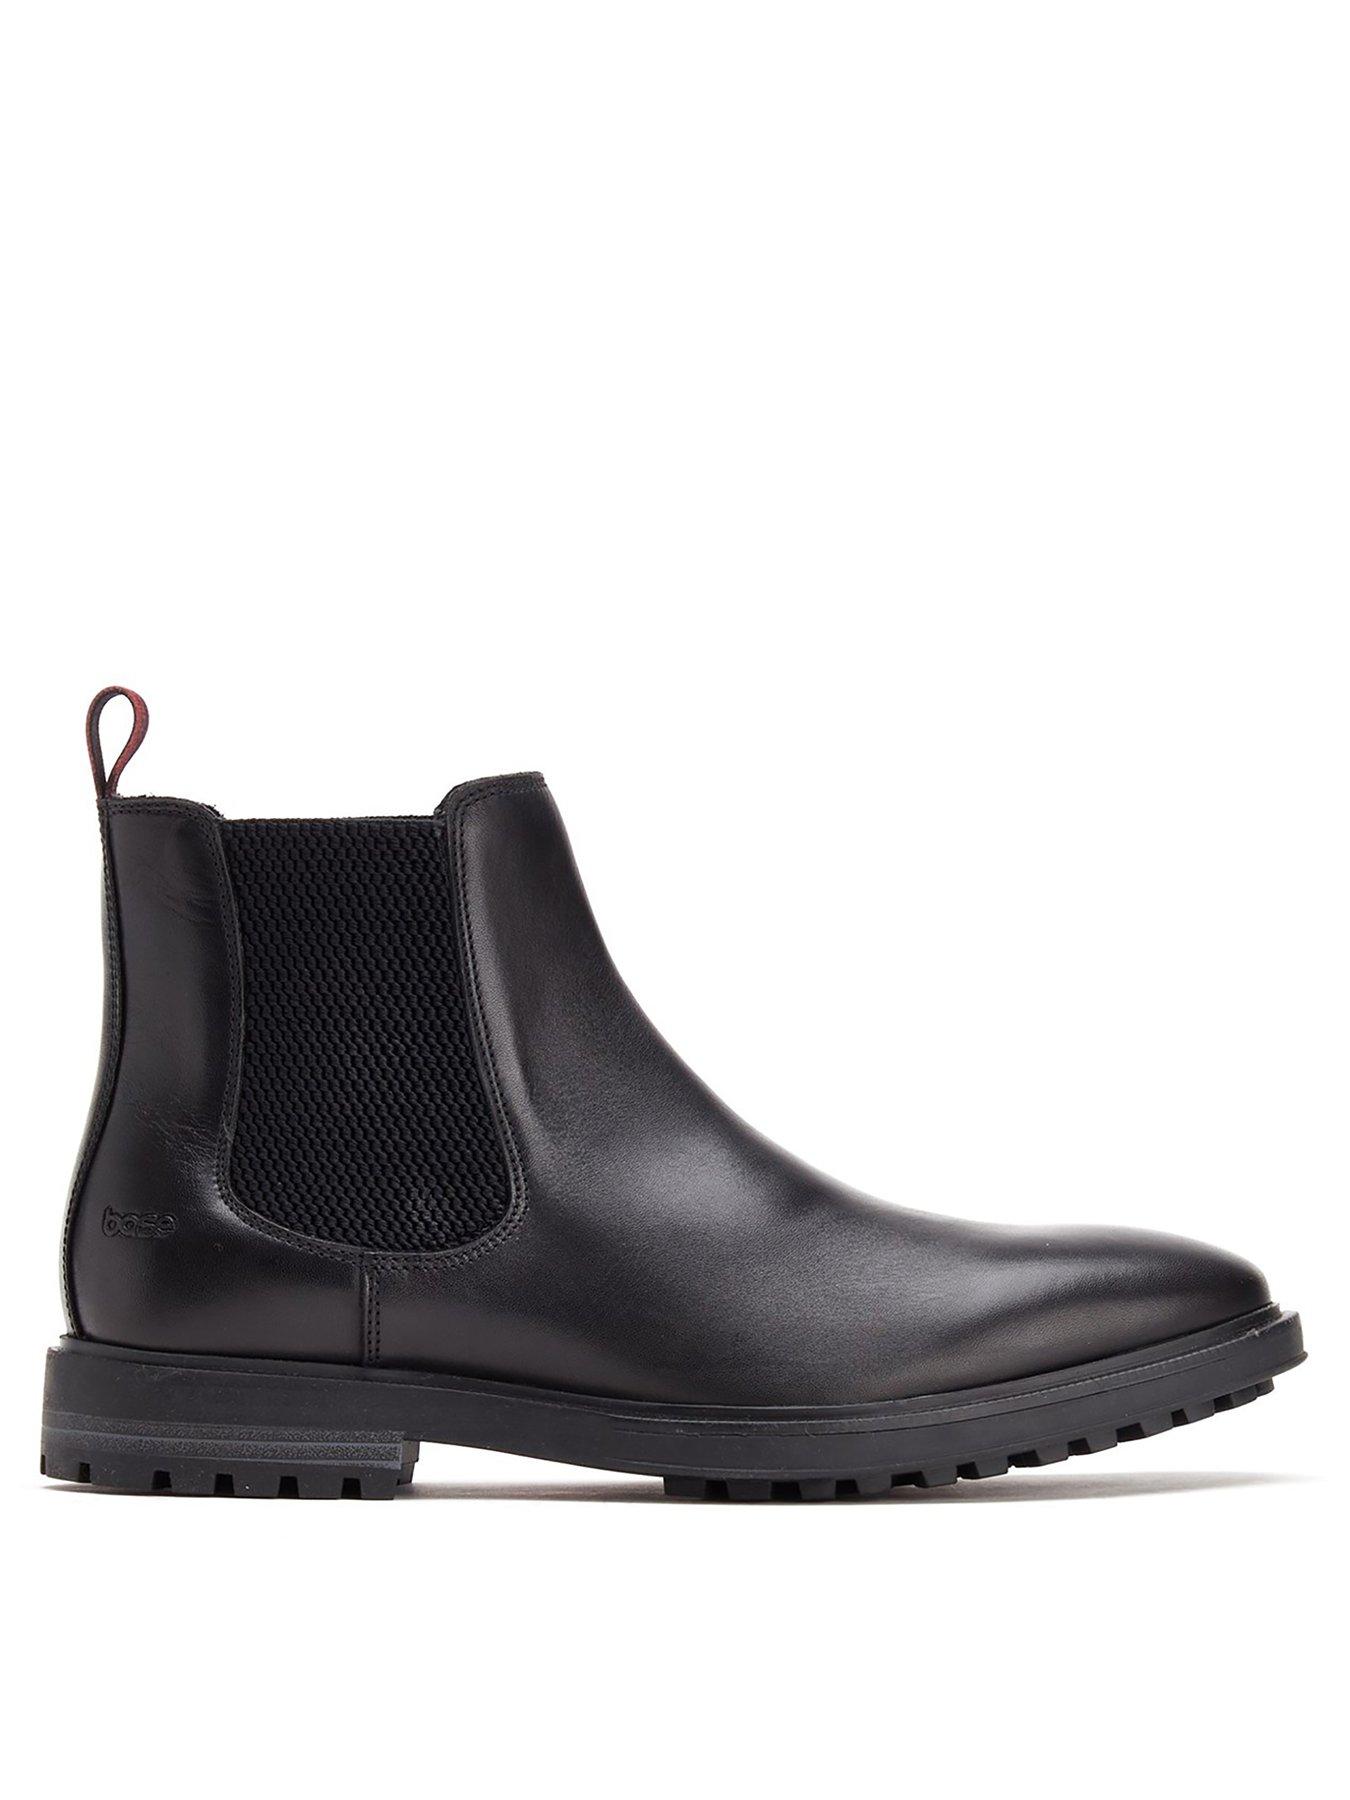 Shoes & boots Garrison Chelsea Boot - Black